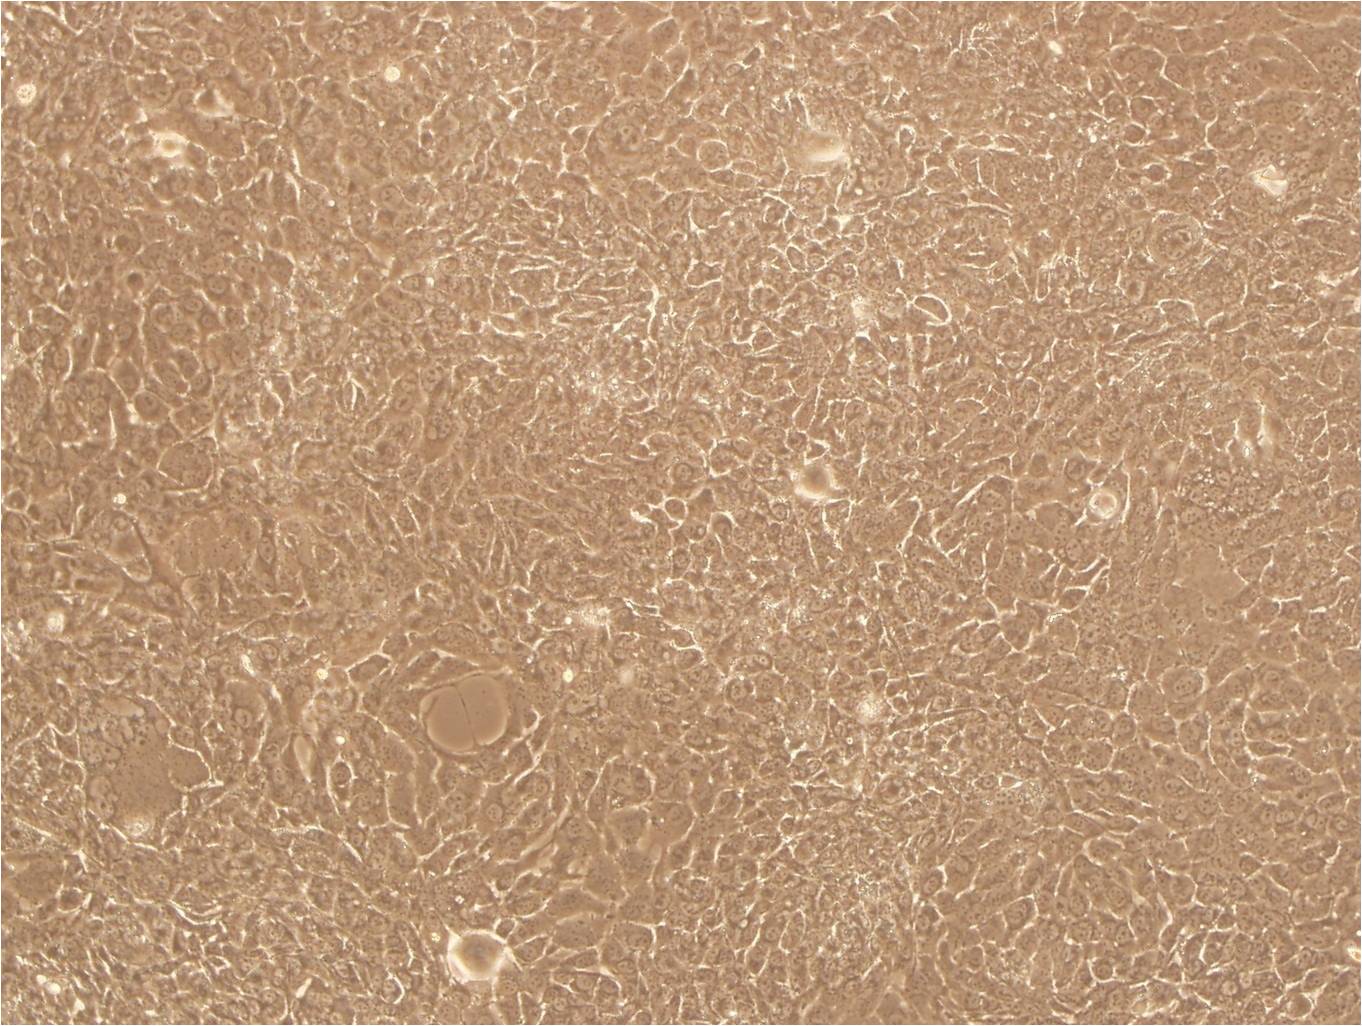 FRhK-4:恒河猴胚肾复苏细胞(提供STR鉴定图谱)